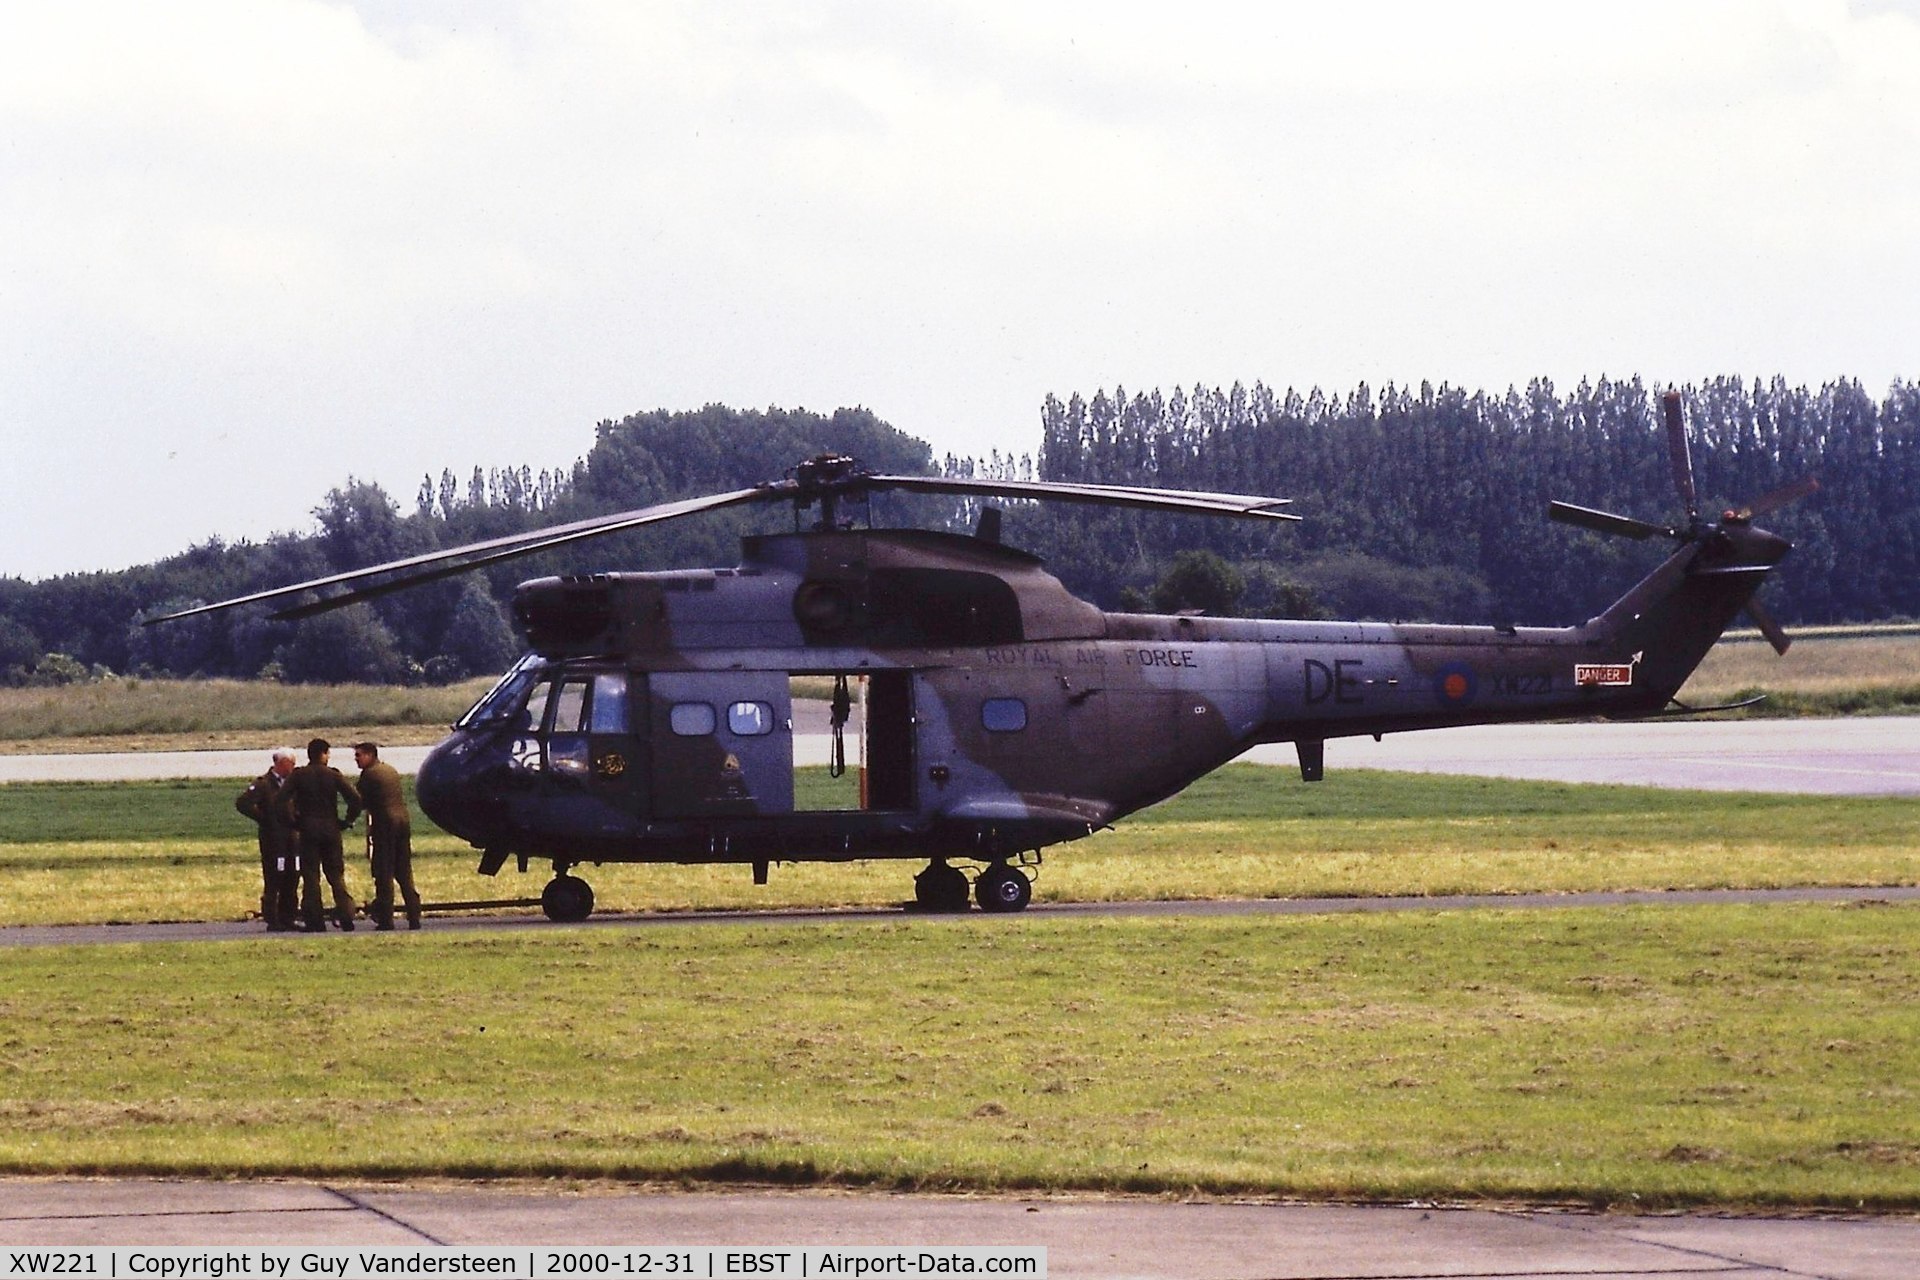 XW221, 1971 Westland Puma HC.1 C/N 1152, RAF Puma XW221 @ EBST airshow June 1987